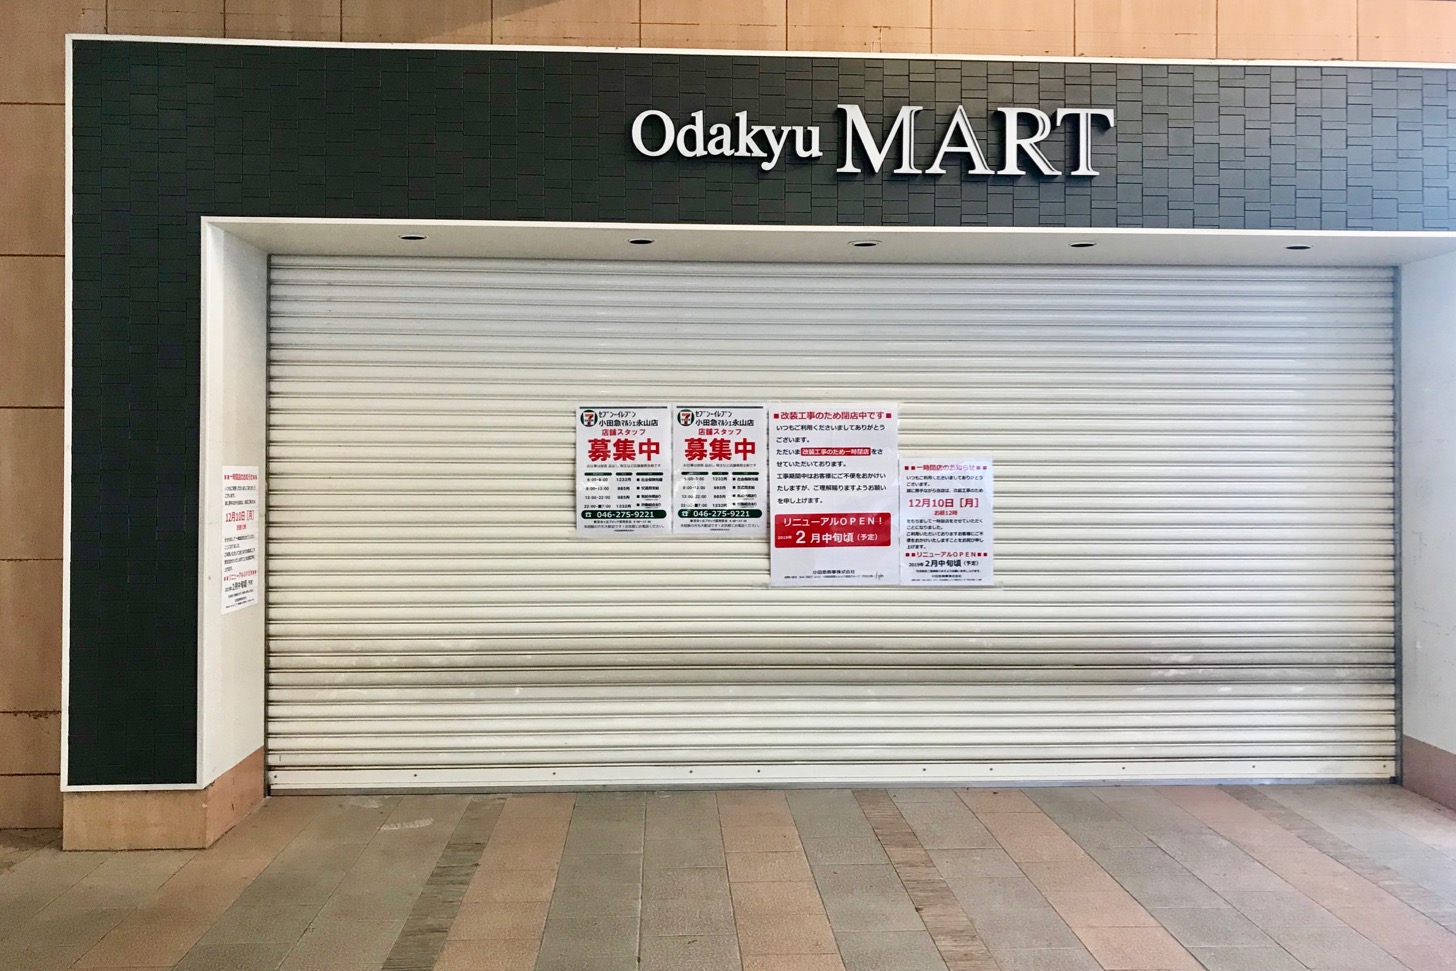 セブン イレブン小田急マルシェ永山店が2月中旬にオープン予定 Odakyu Martからの転換で 多摩ポン